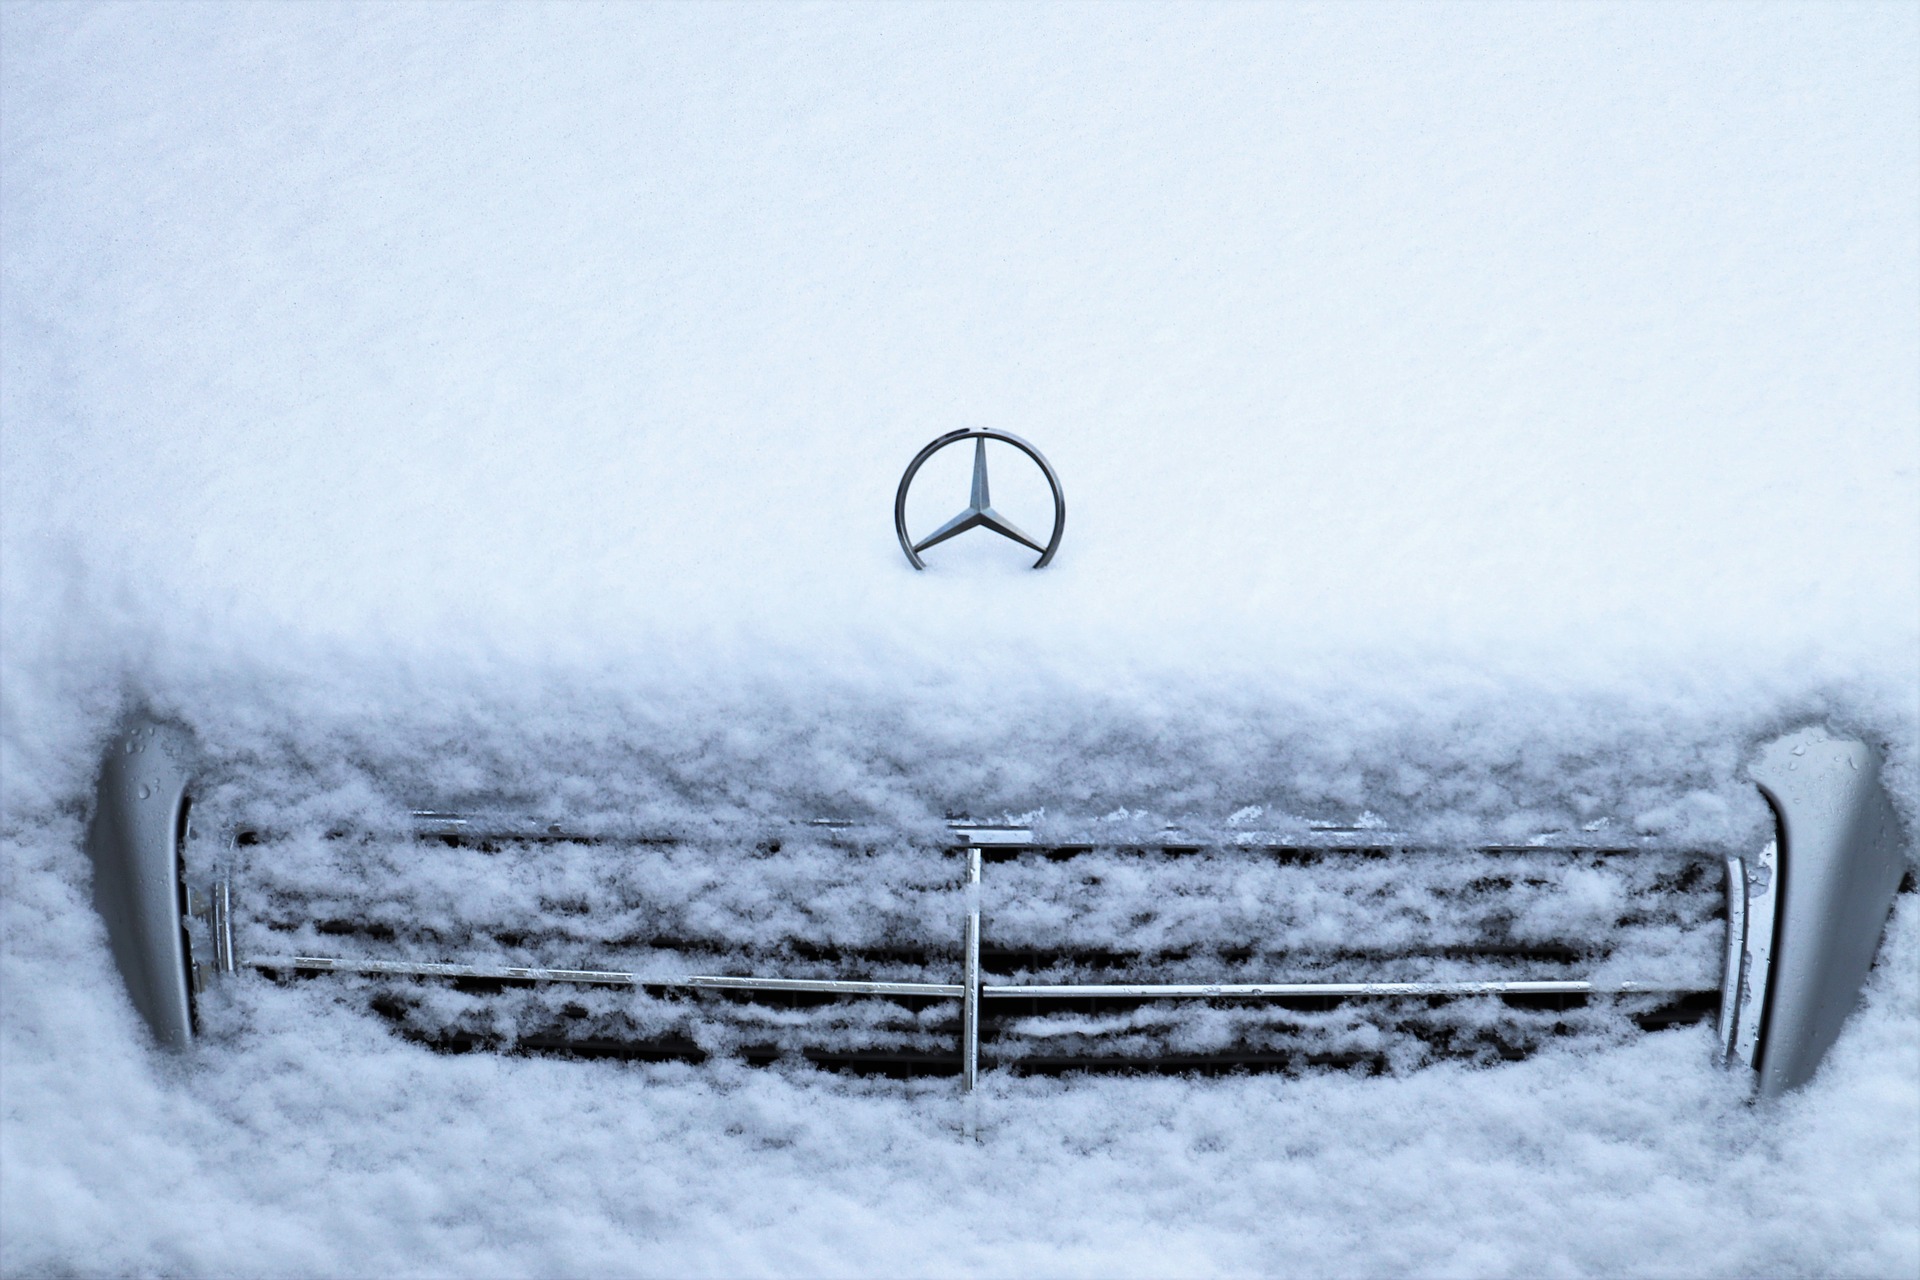 Уход за автомобилем зимой. О чем стоит помнить?